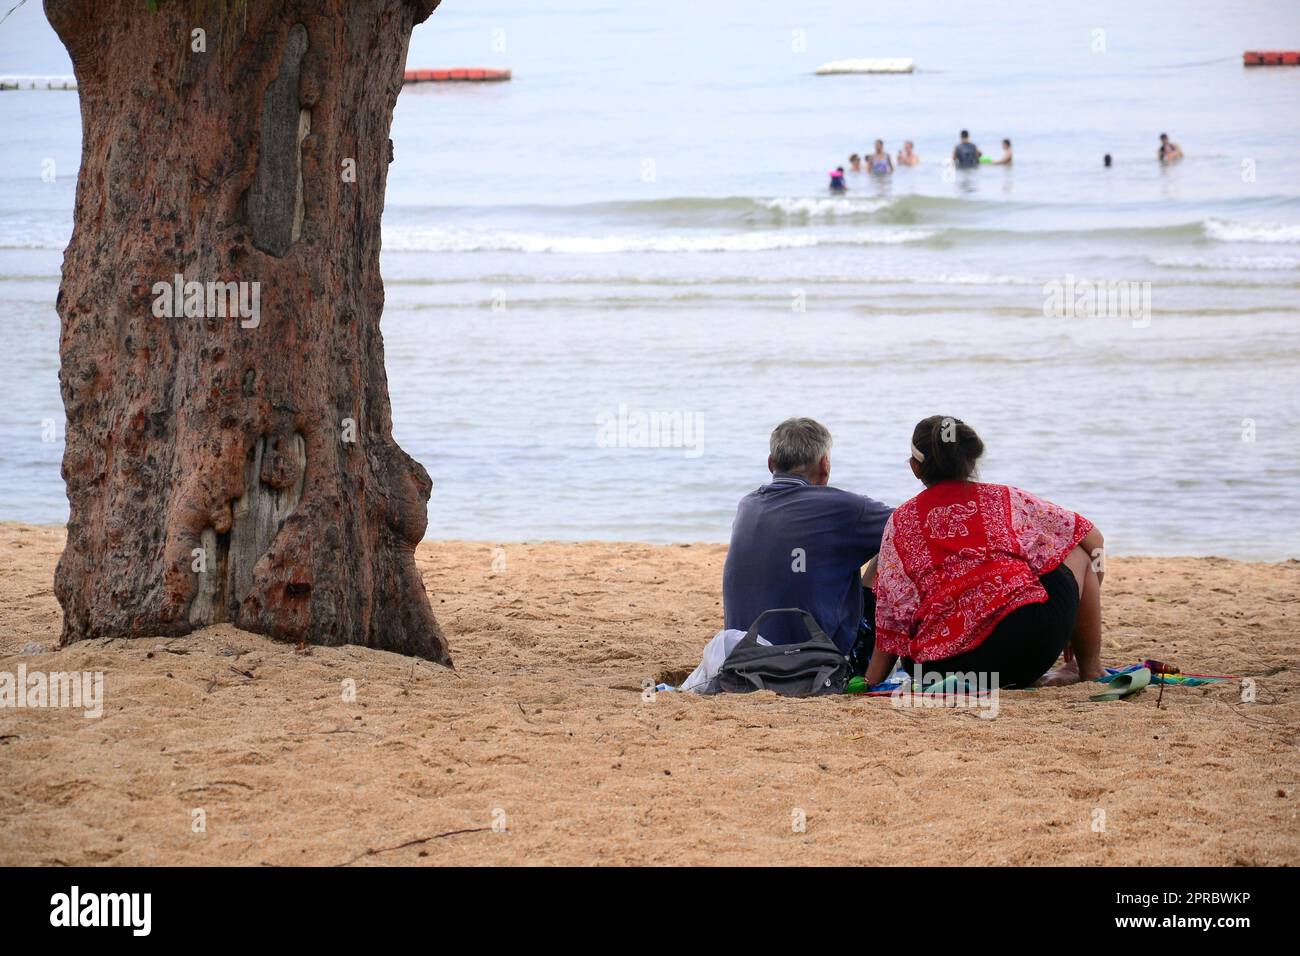 Un homme et une femme plus âgés s'assoient ensemble sur la plage, à côté d'un arbre, en regardant la mer à Jomtien, Pattaya, Thaïlande. Détente, détente, vacances, vacances Banque D'Images